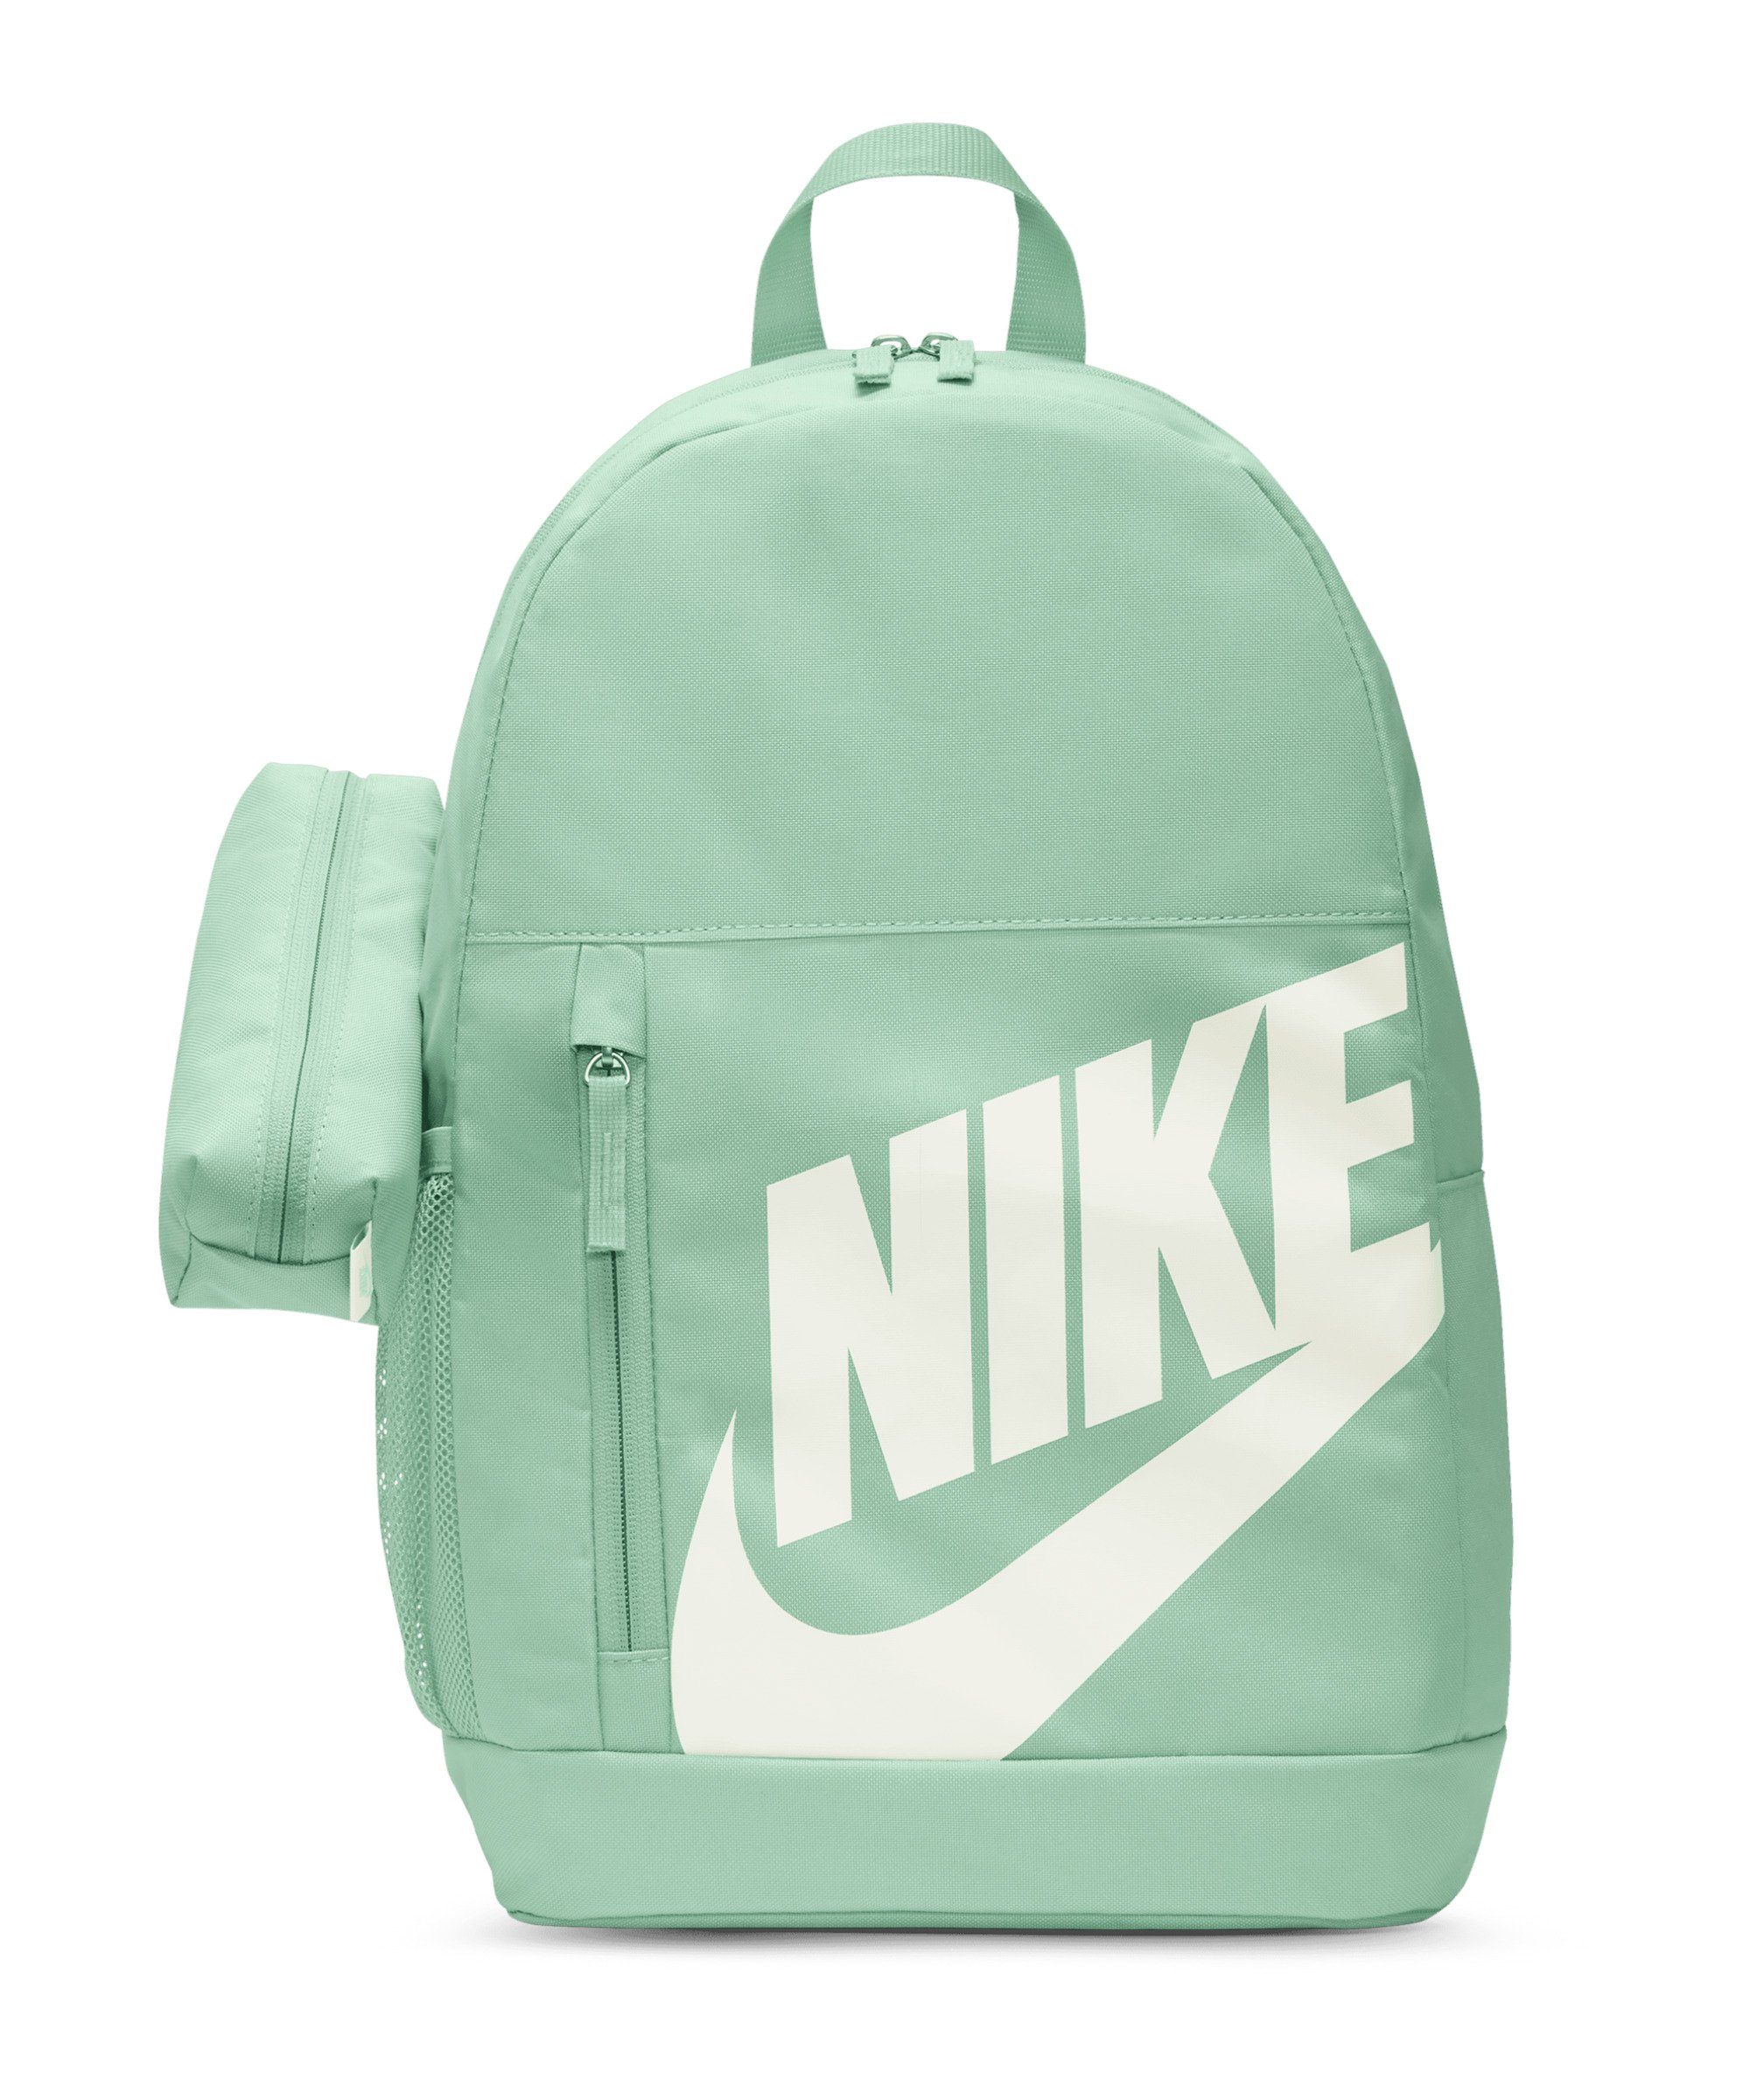 Nike Sporttasche »Elemental Backpack Rucksack Kids«